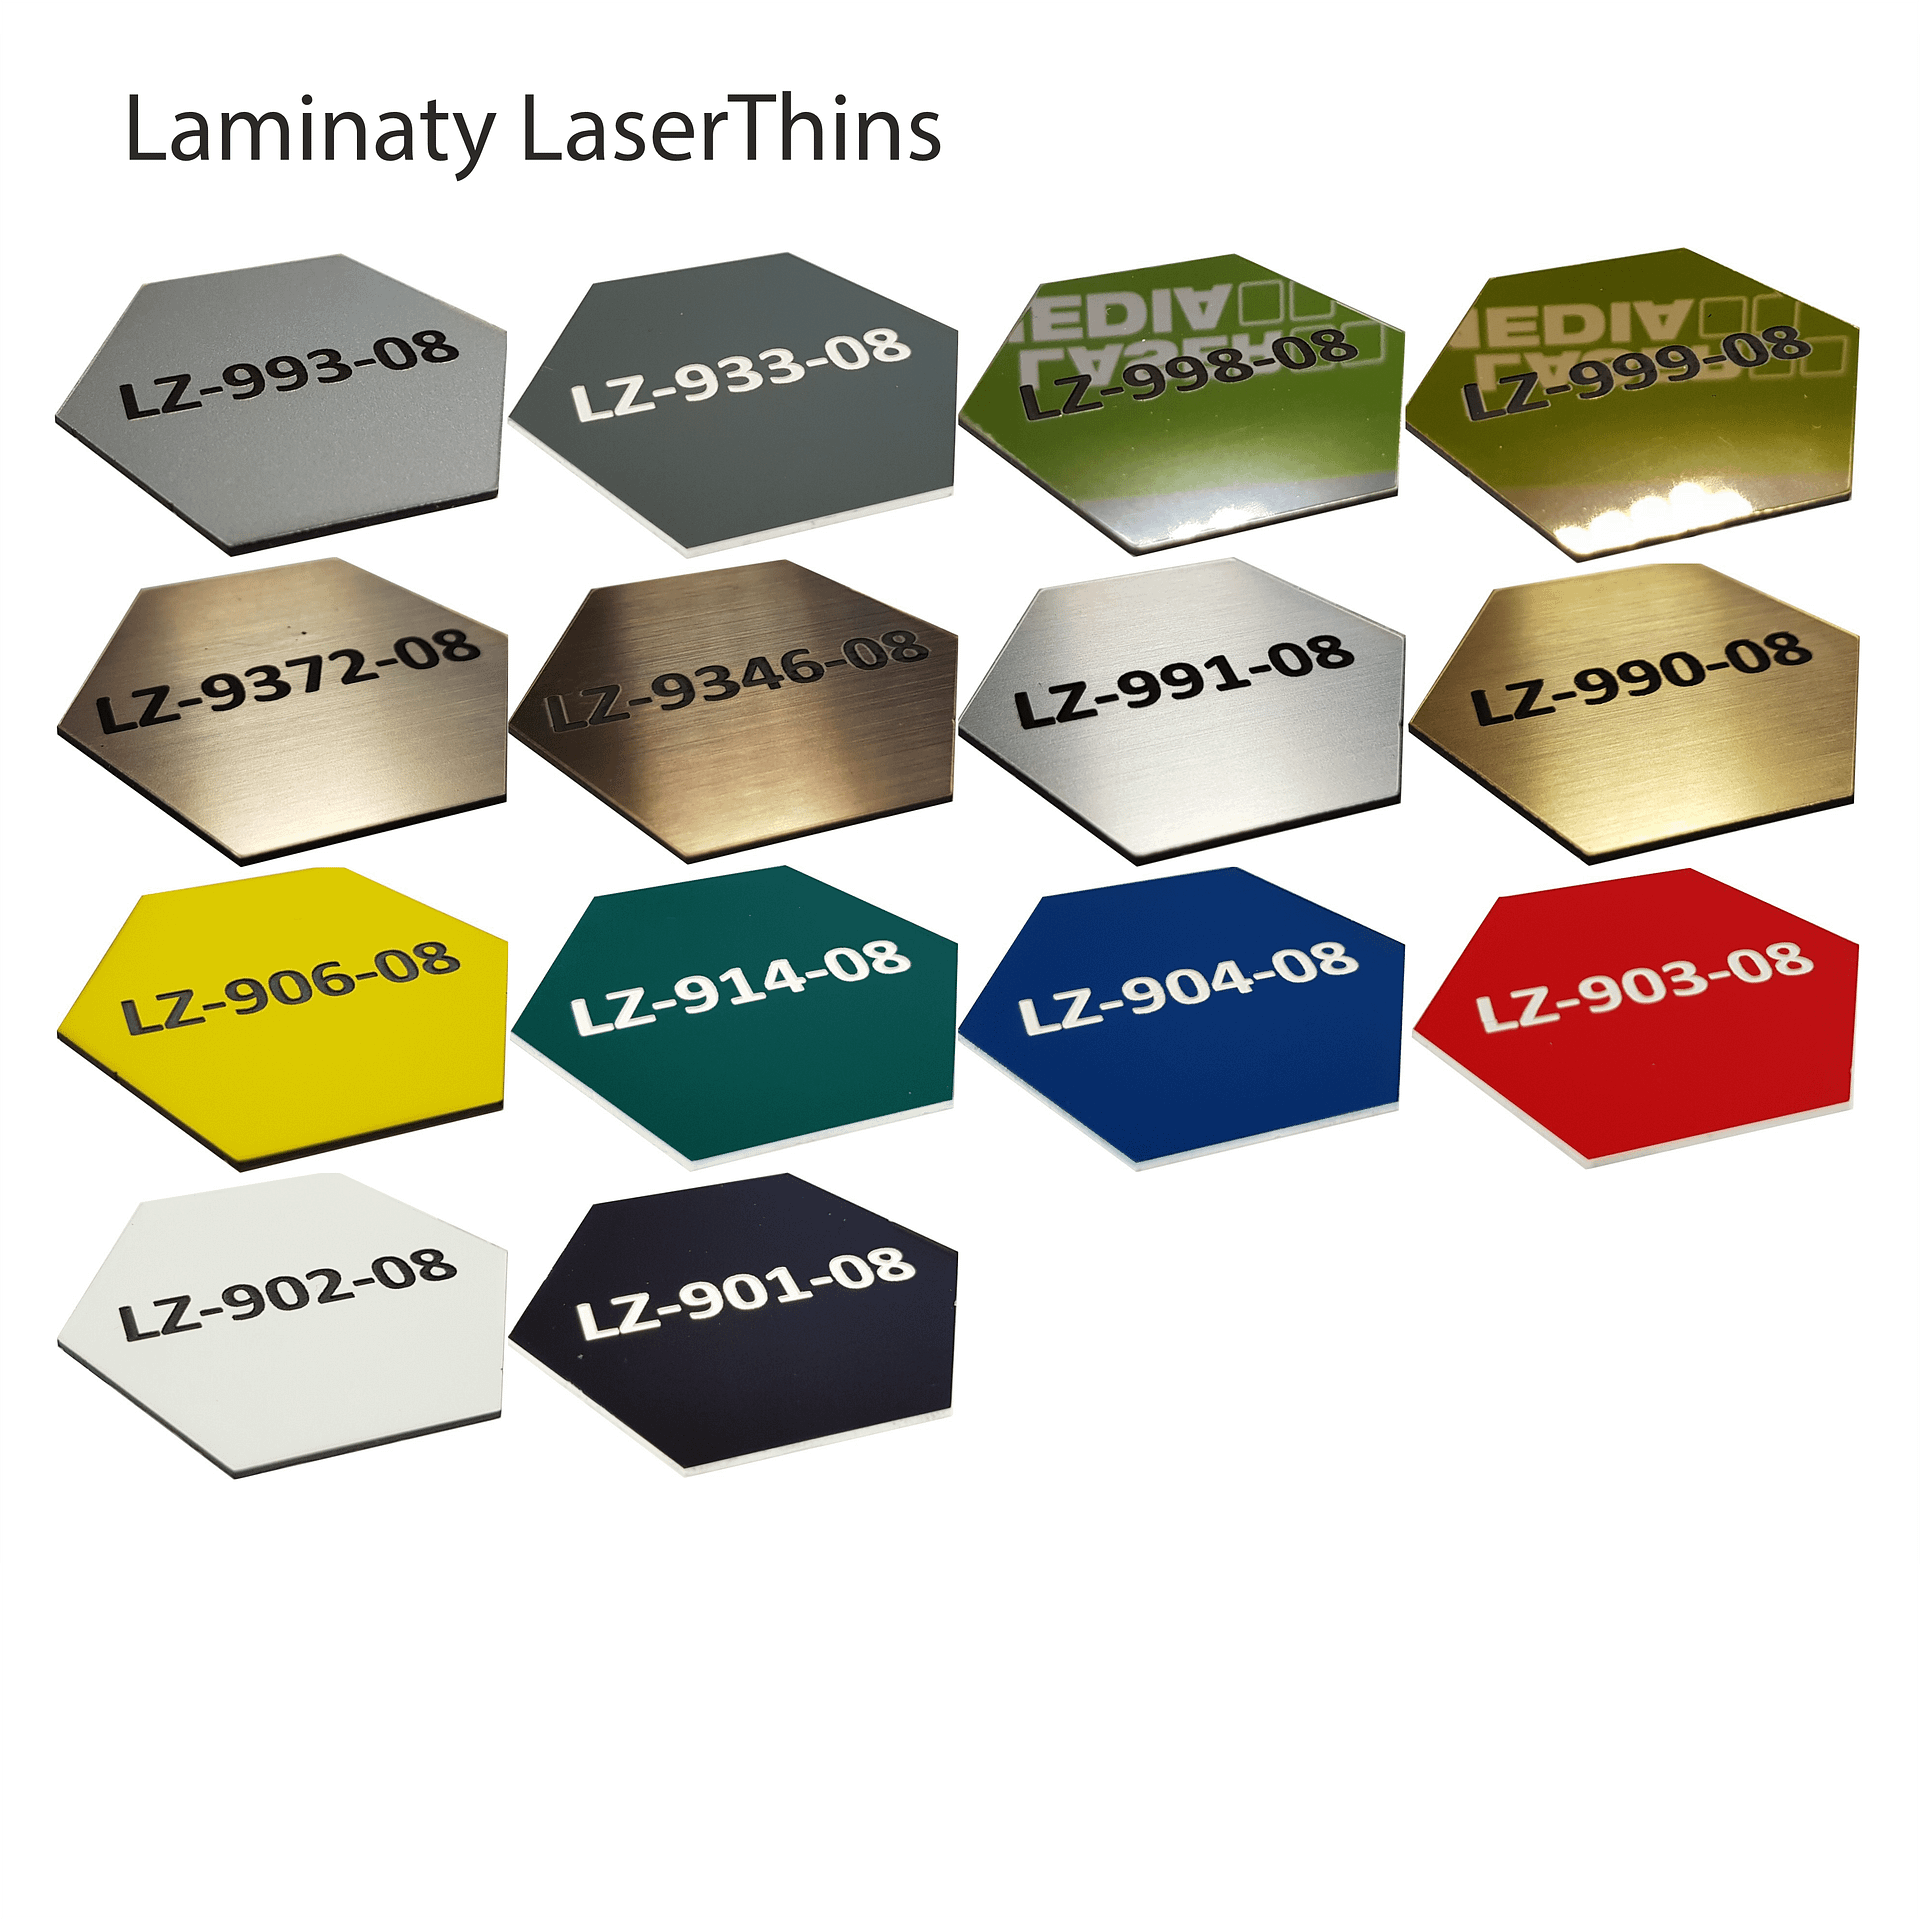 Laminaty LaserThins